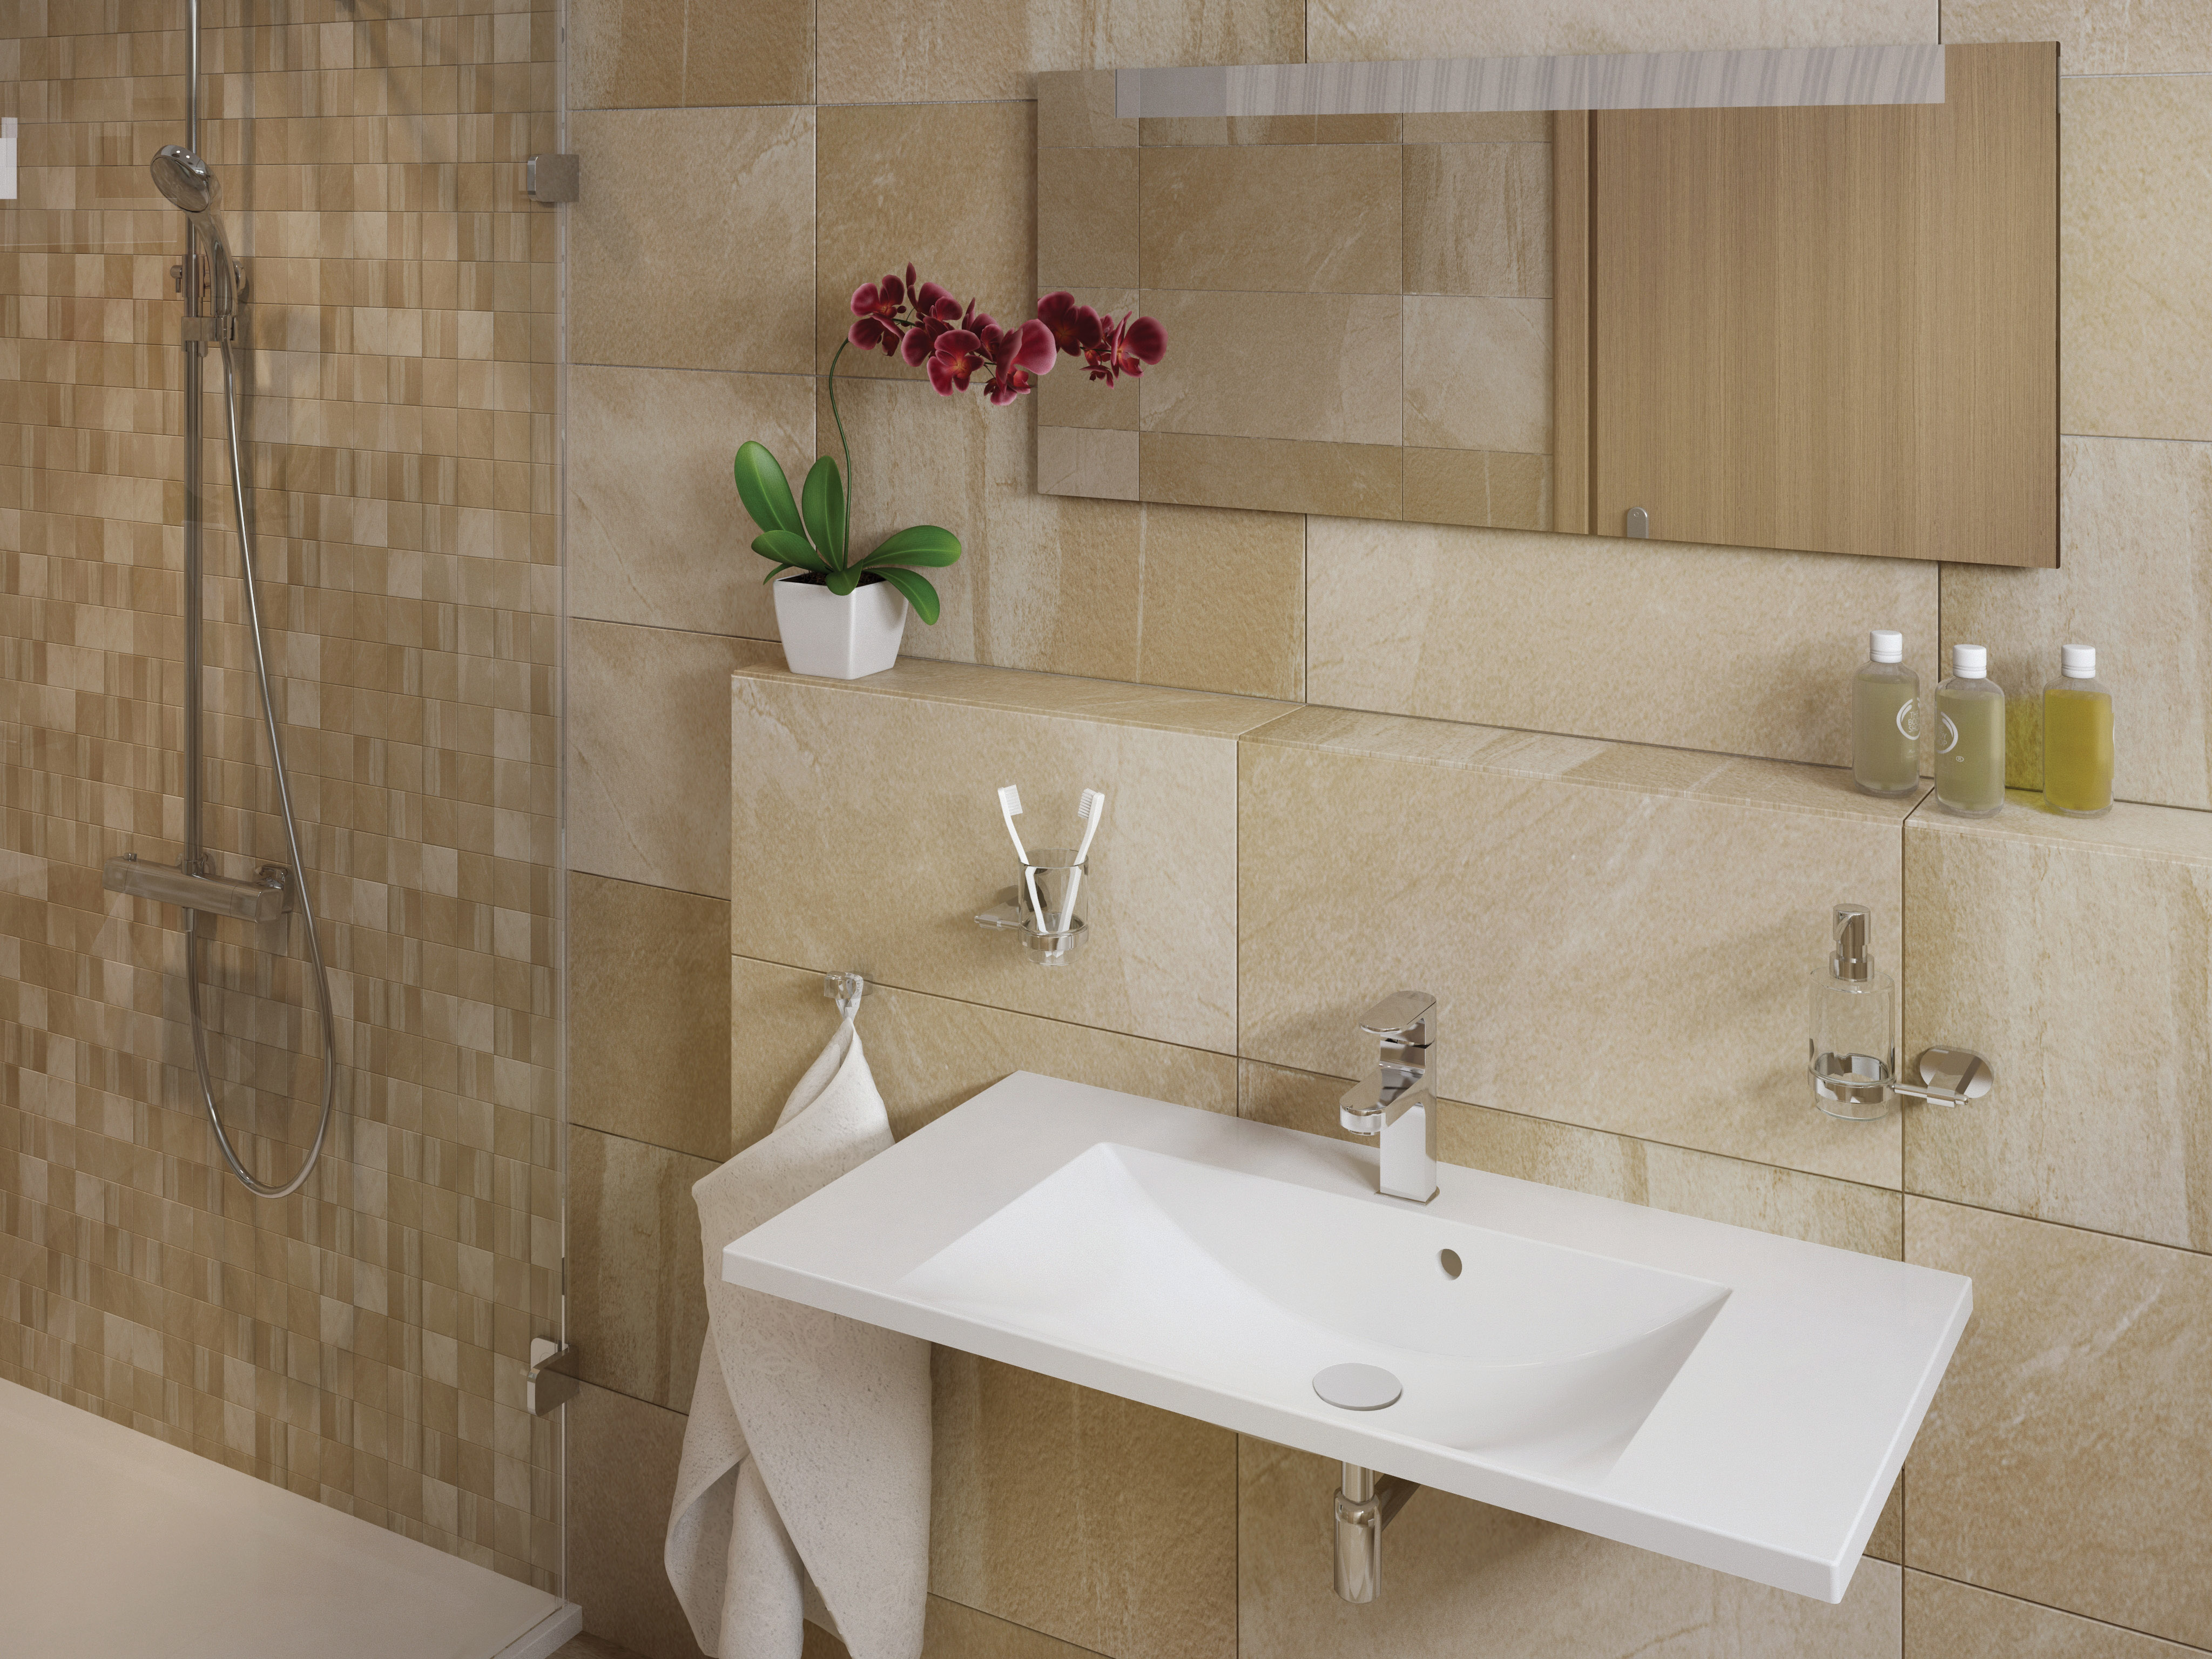 A 3 méretben elérhető Flat fürdőszobai mosdók a fürdőszoba falán futnak, hogy a belső tér szabad és szellős maradjon.